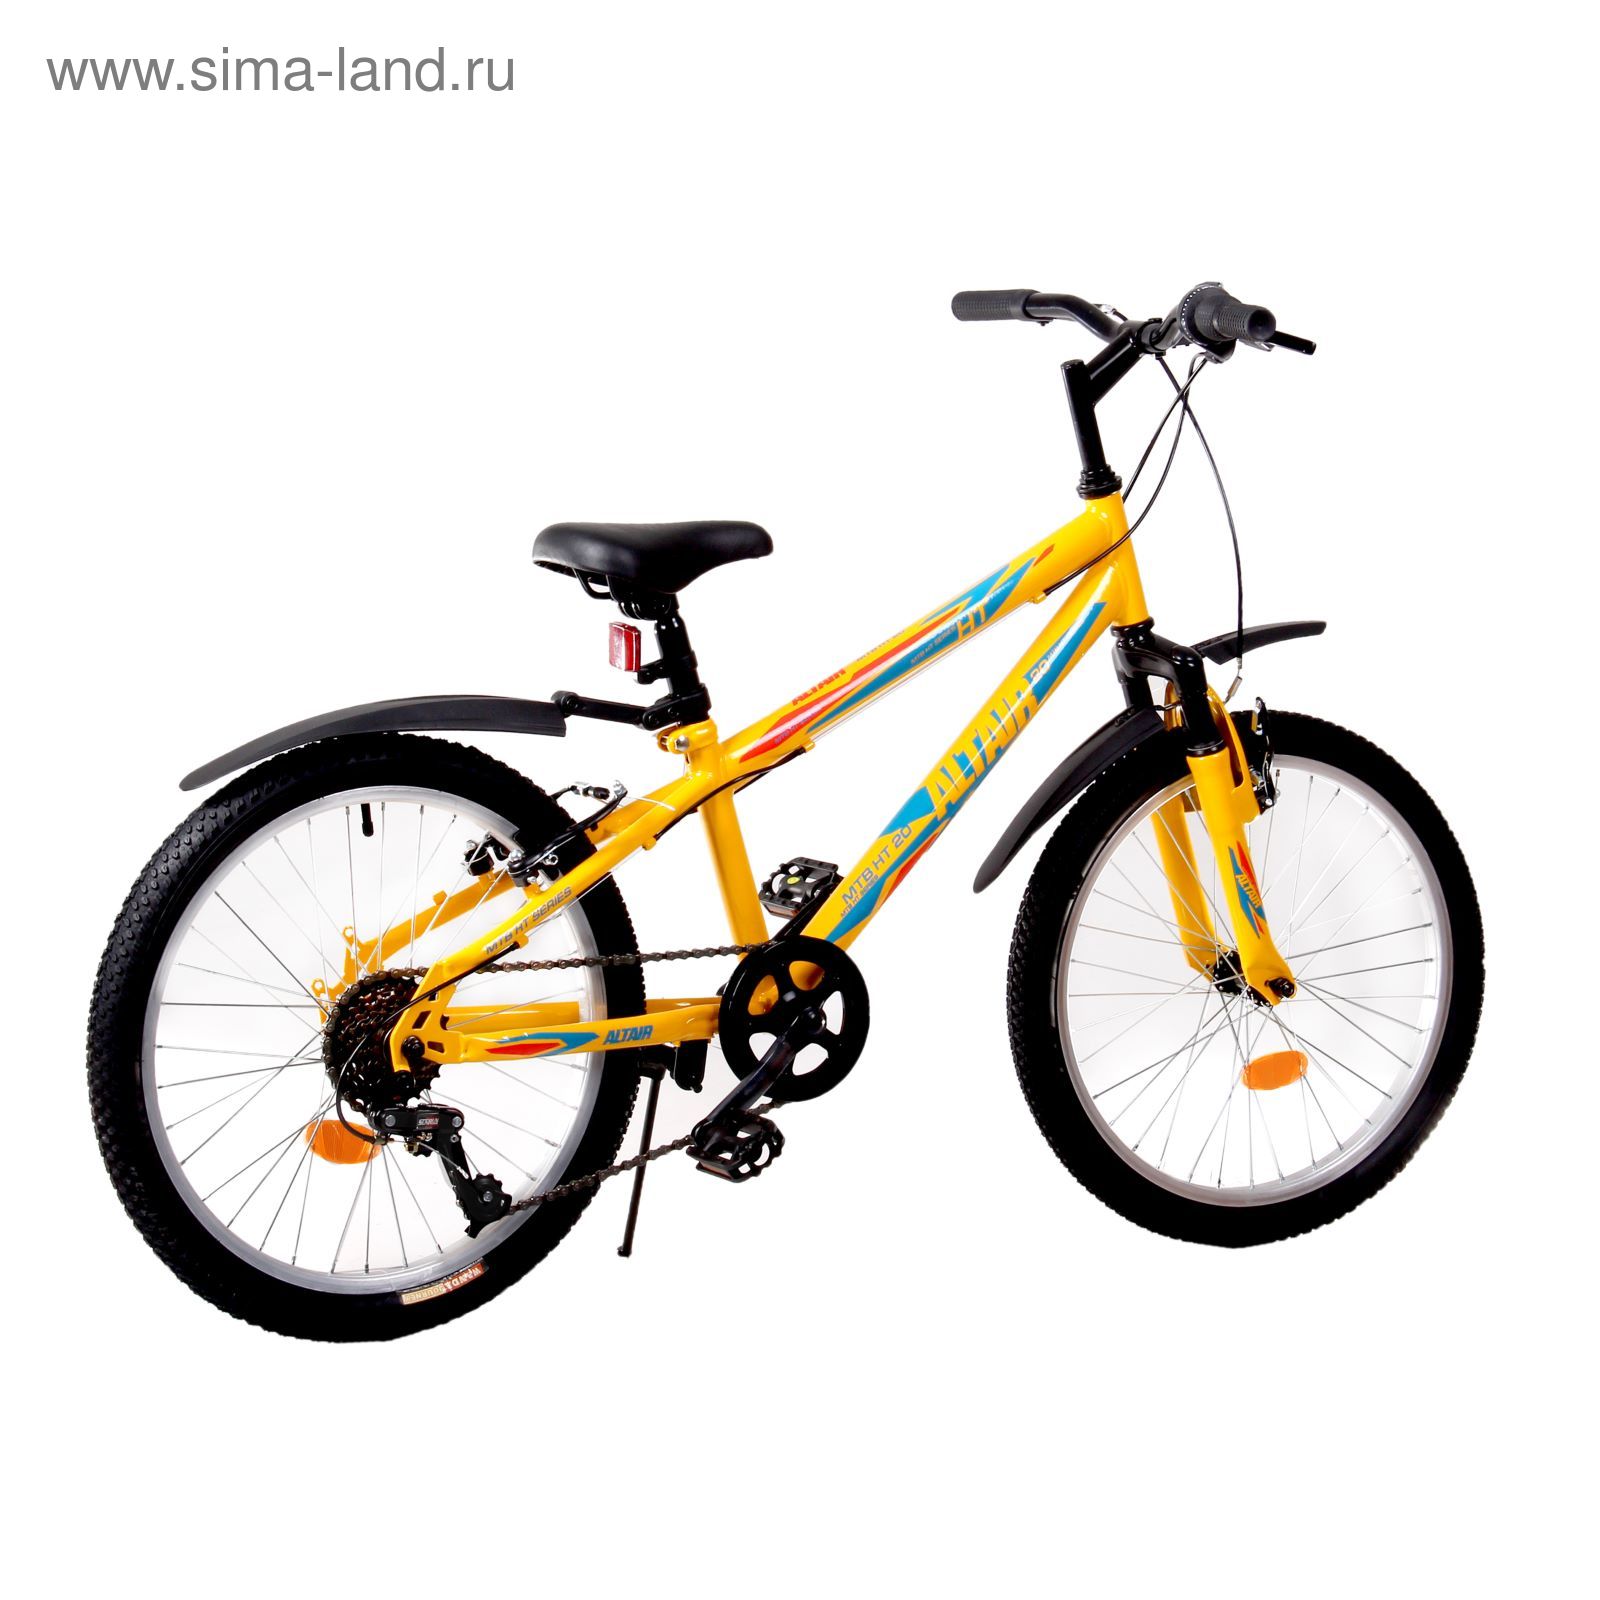 Велосипед 20" Altair MTB HT 20, 2017, цвет жёлтый, размер 11"